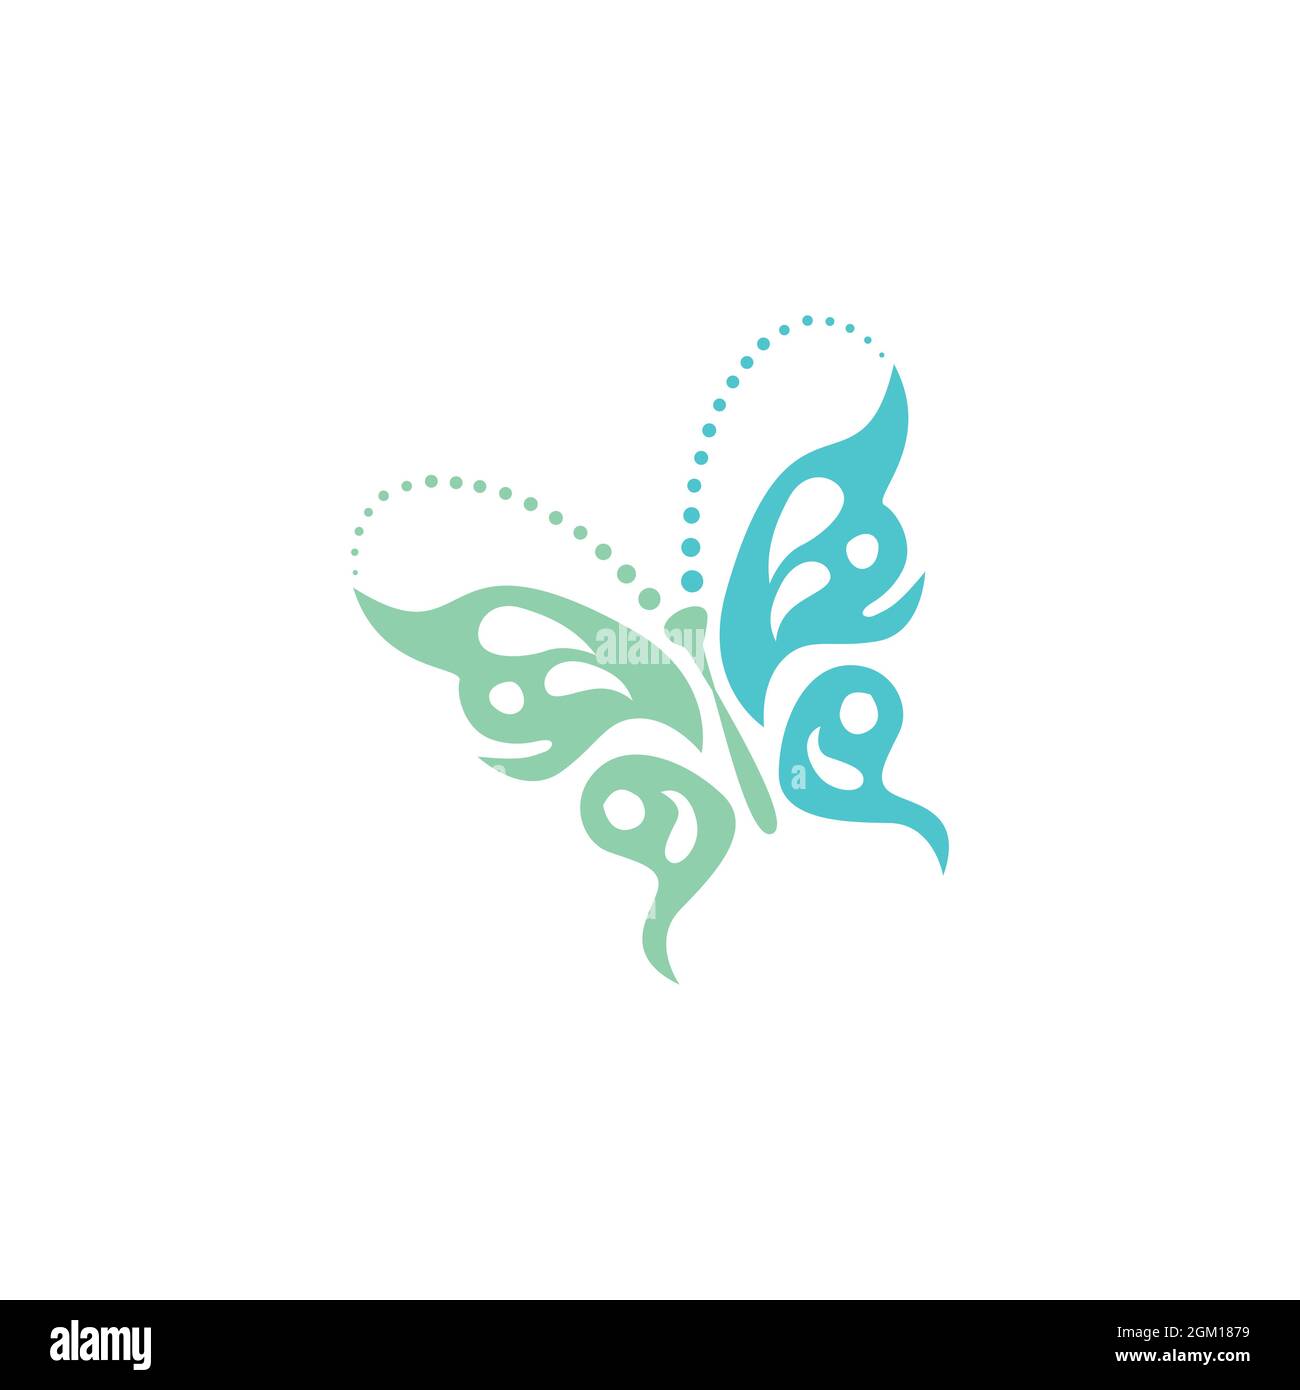 design graphique vectoriel plat avec logo ethnique en forme de papillon élégant Illustration de Vecteur